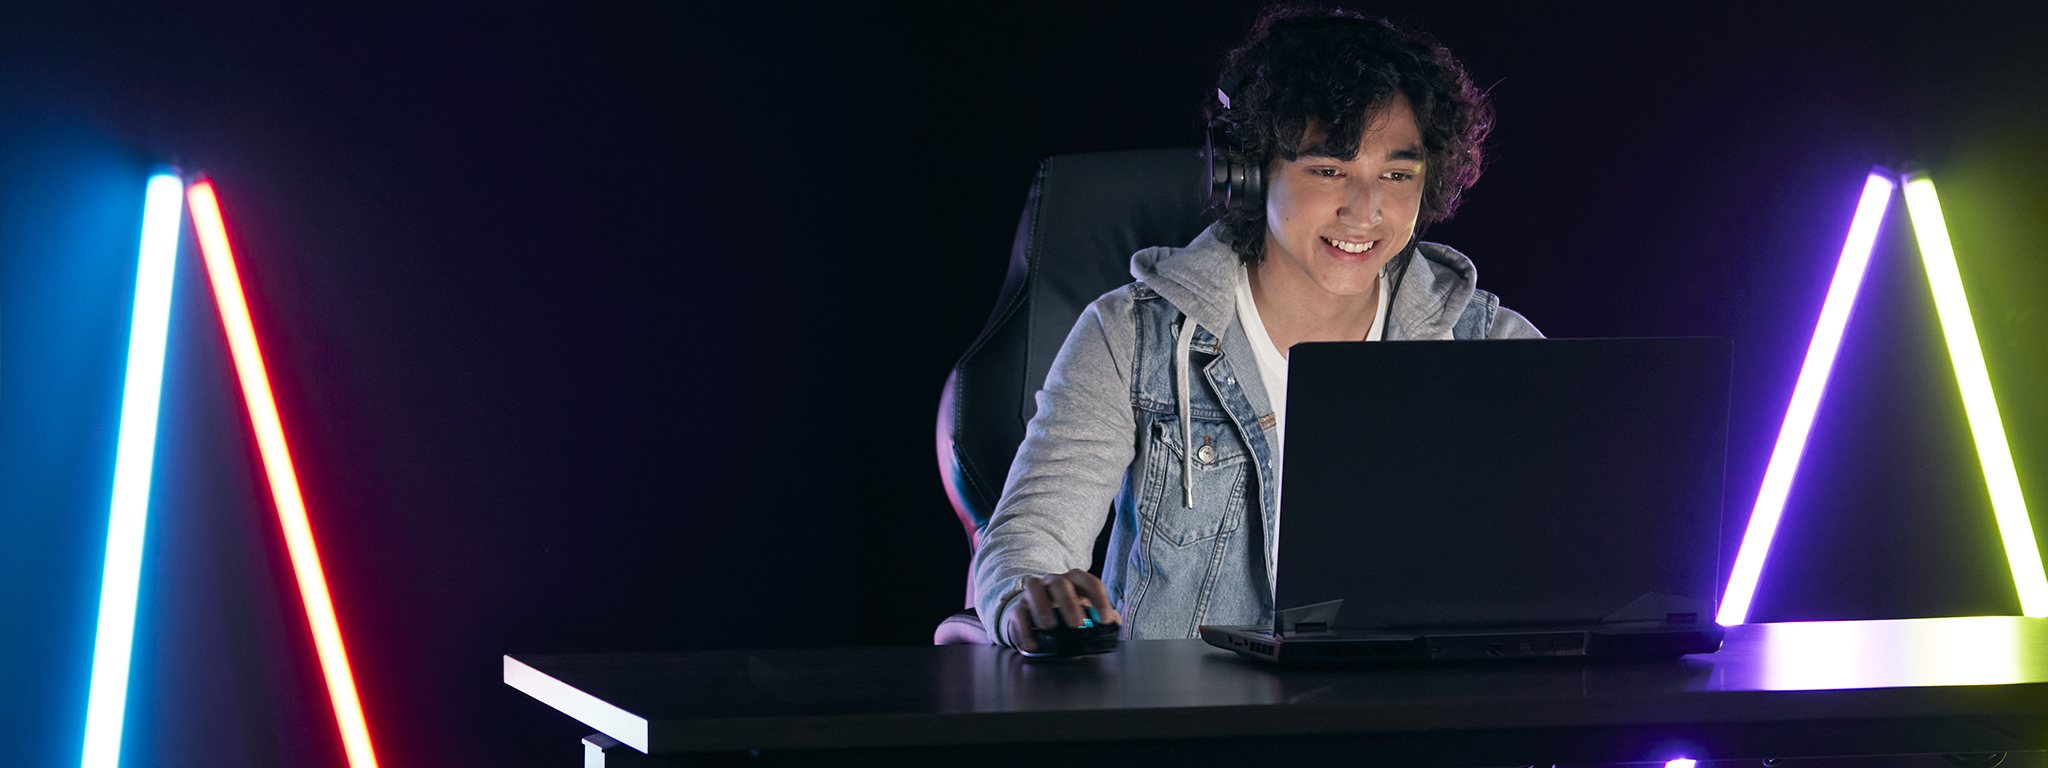 어두운 방에서 노트북으로 게임을 하는 어린 게이머